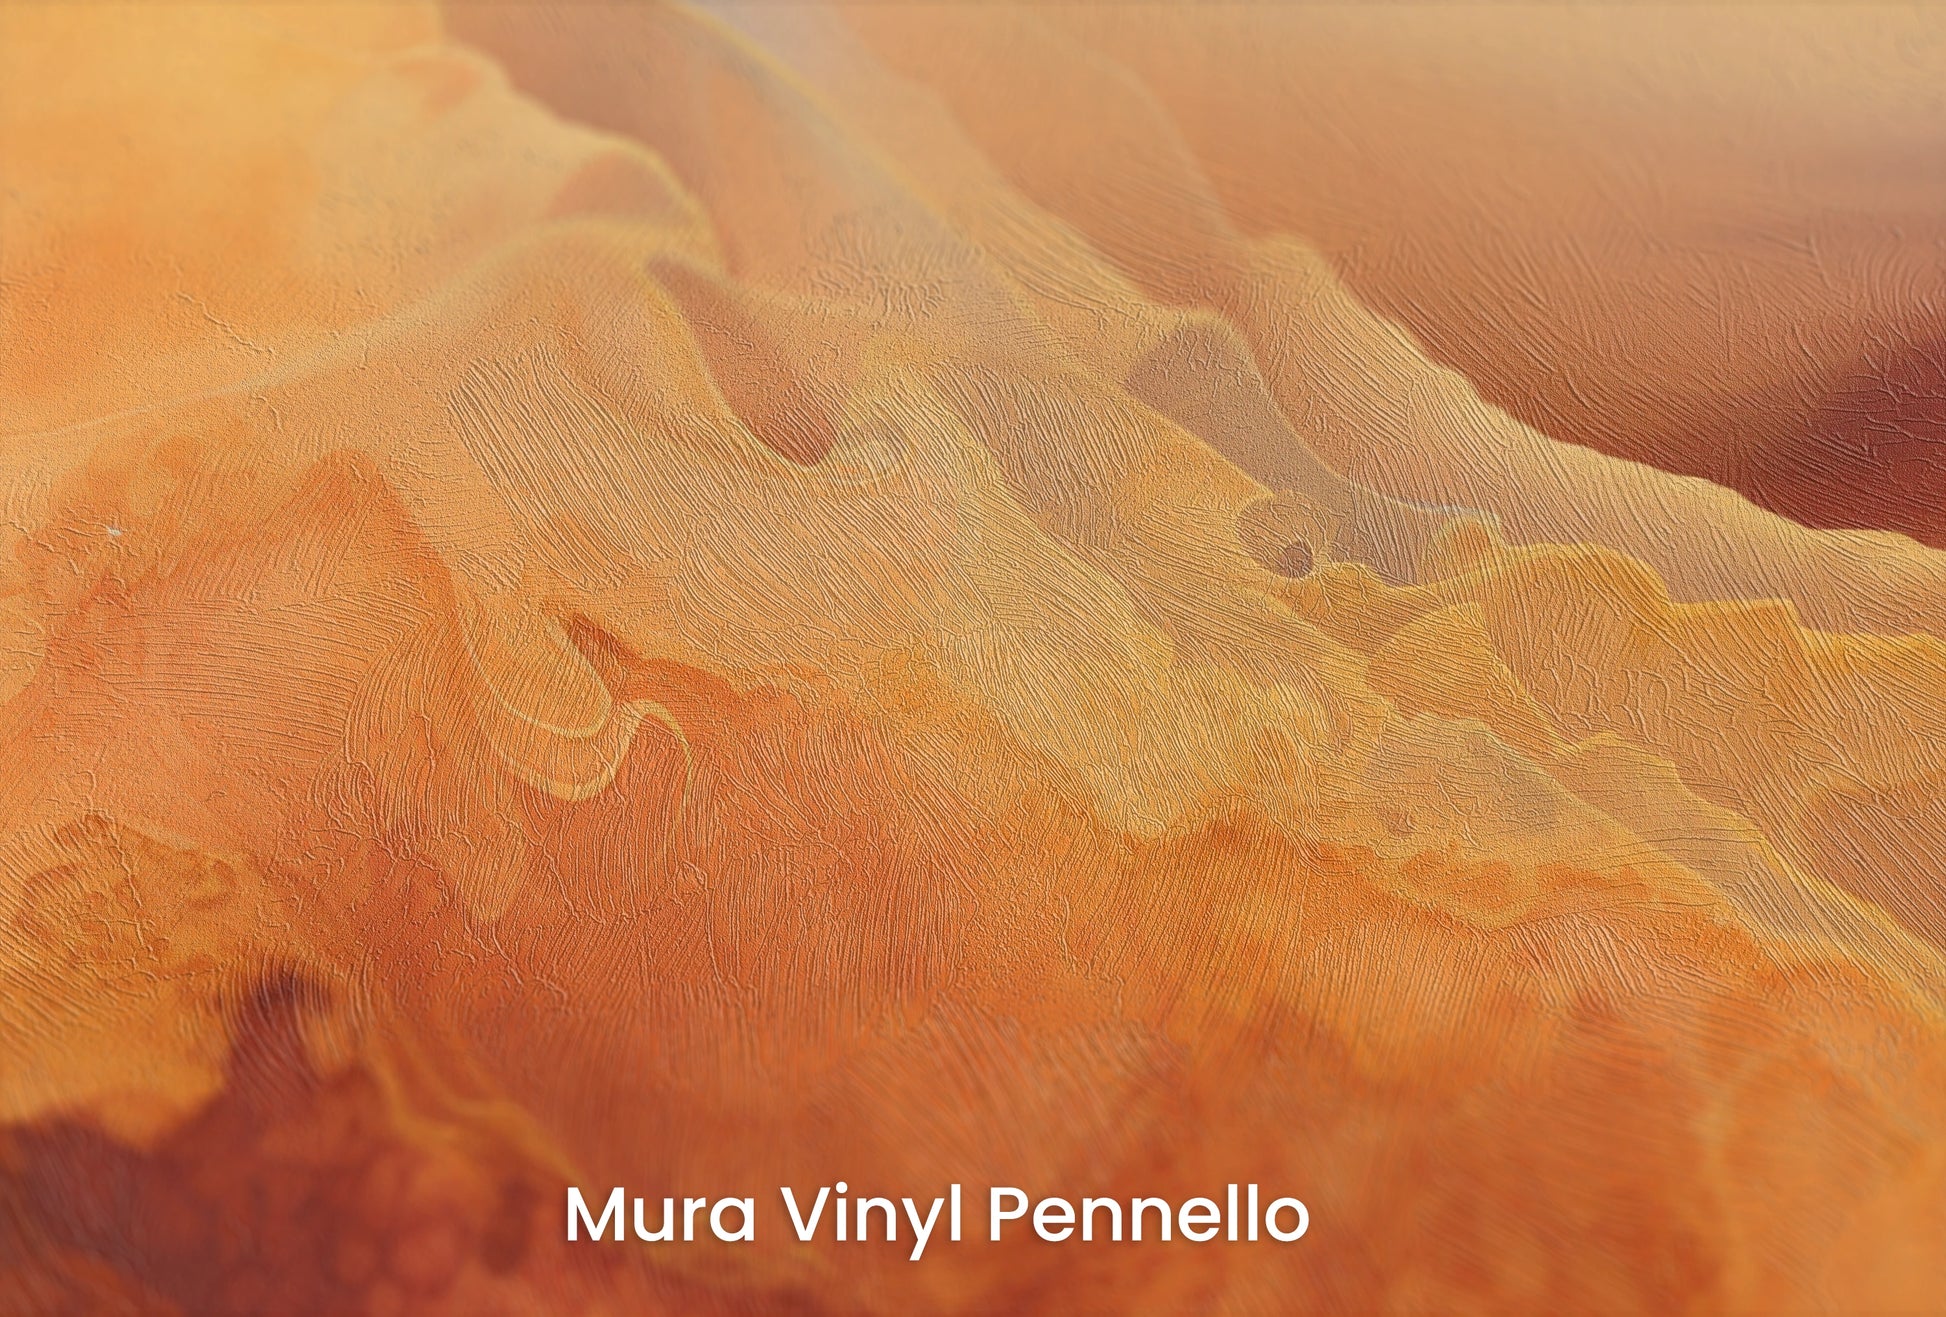 Zbliżenie na artystyczną fototapetę o nazwie Cratered Expanse na podłożu Mura Vinyl Pennello - faktura pociągnięć pędzla malarskiego.